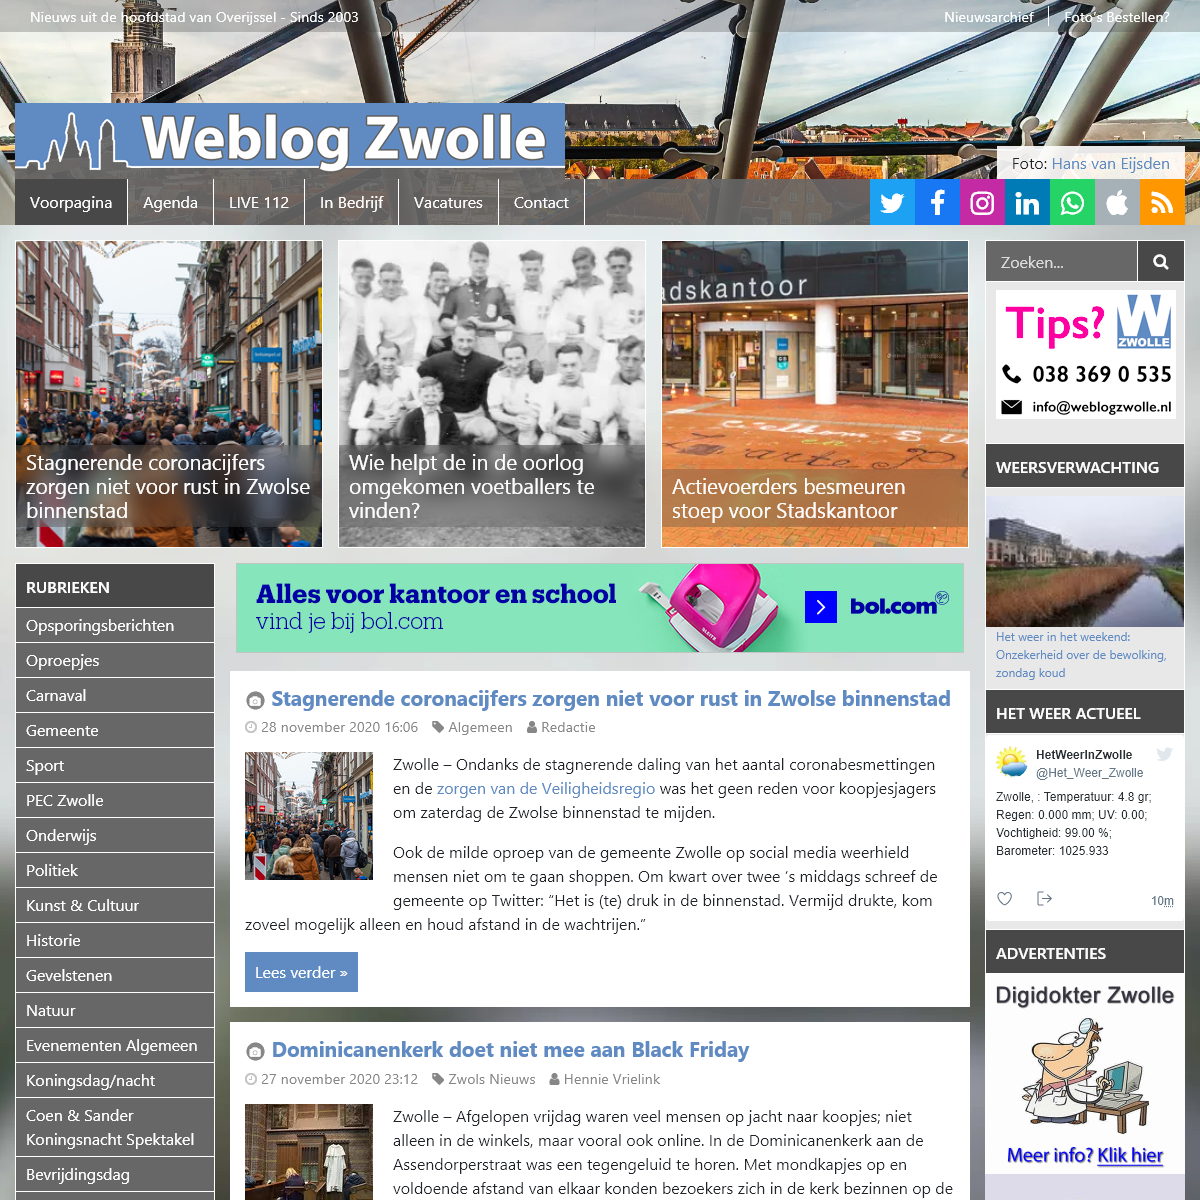 A complete backup of weblogzwolle.nl